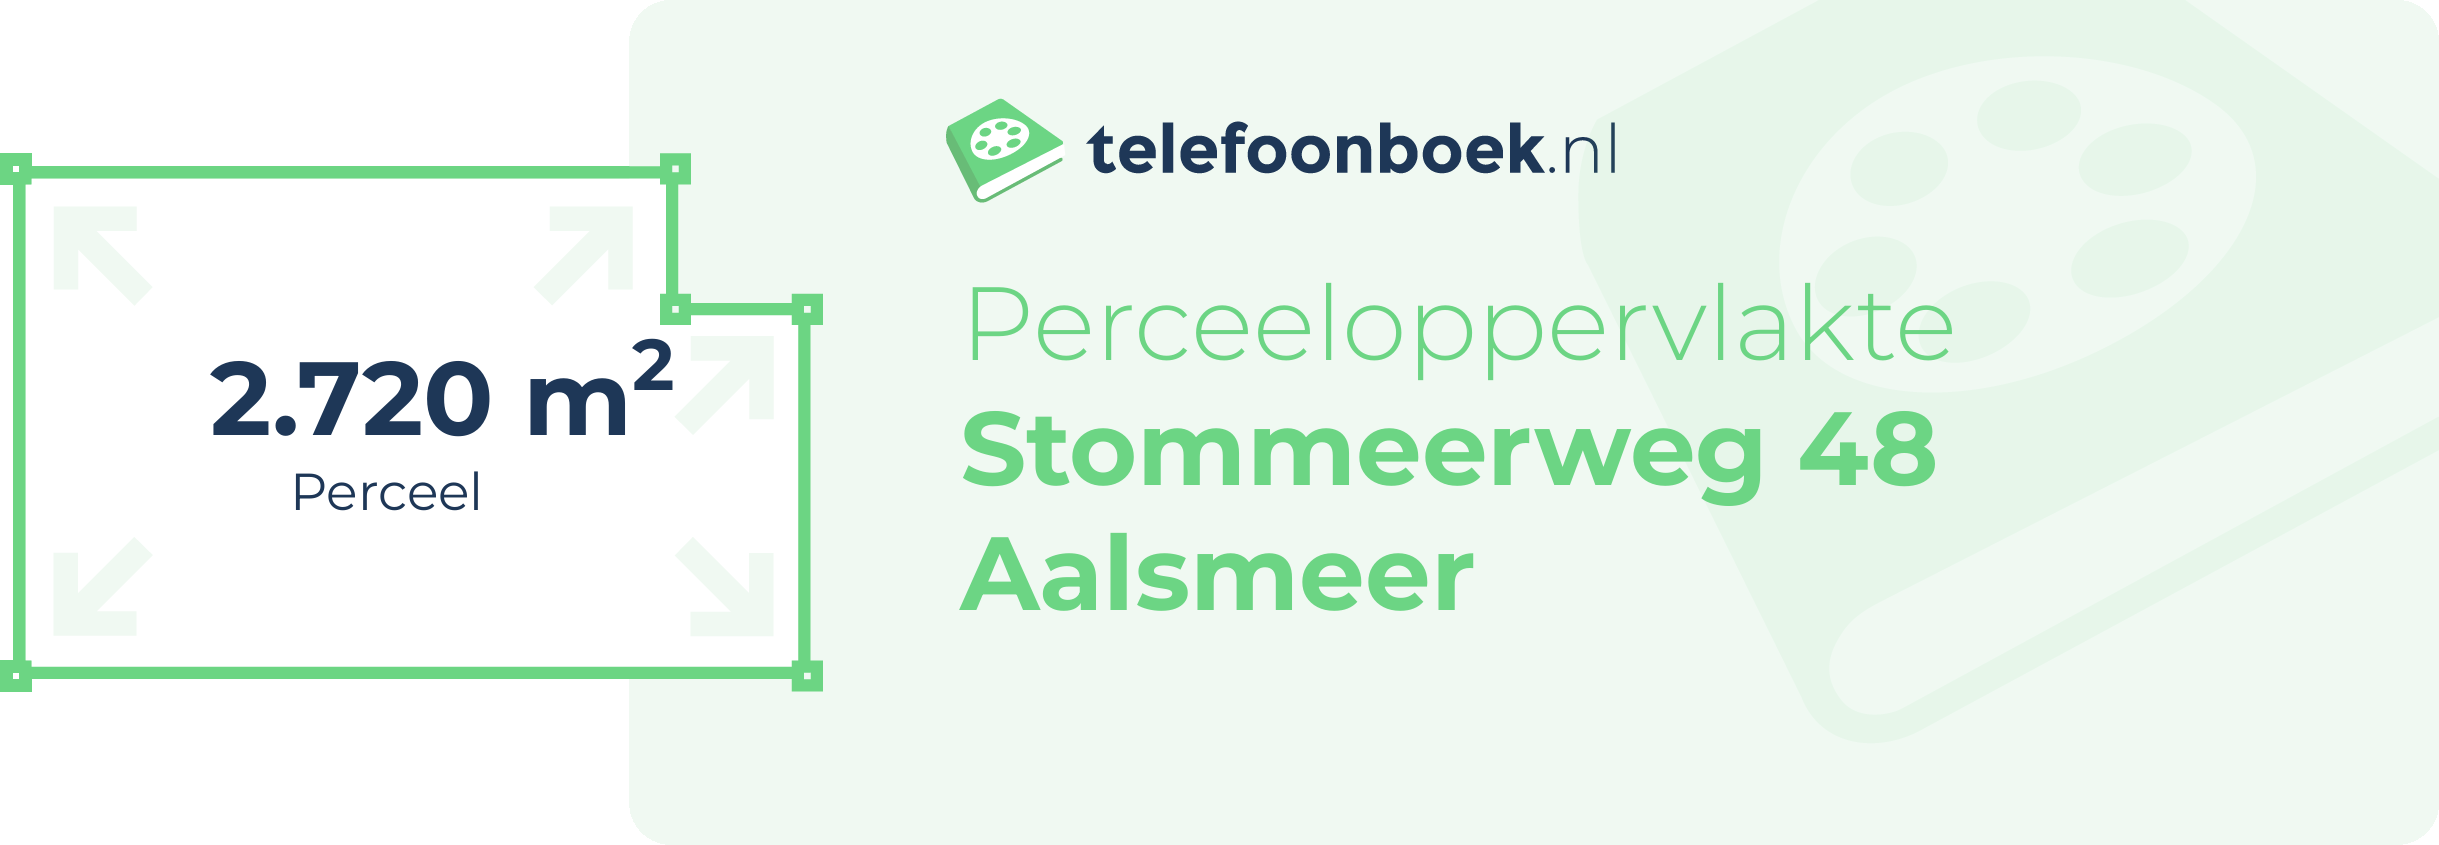 Perceeloppervlakte Stommeerweg 48 Aalsmeer